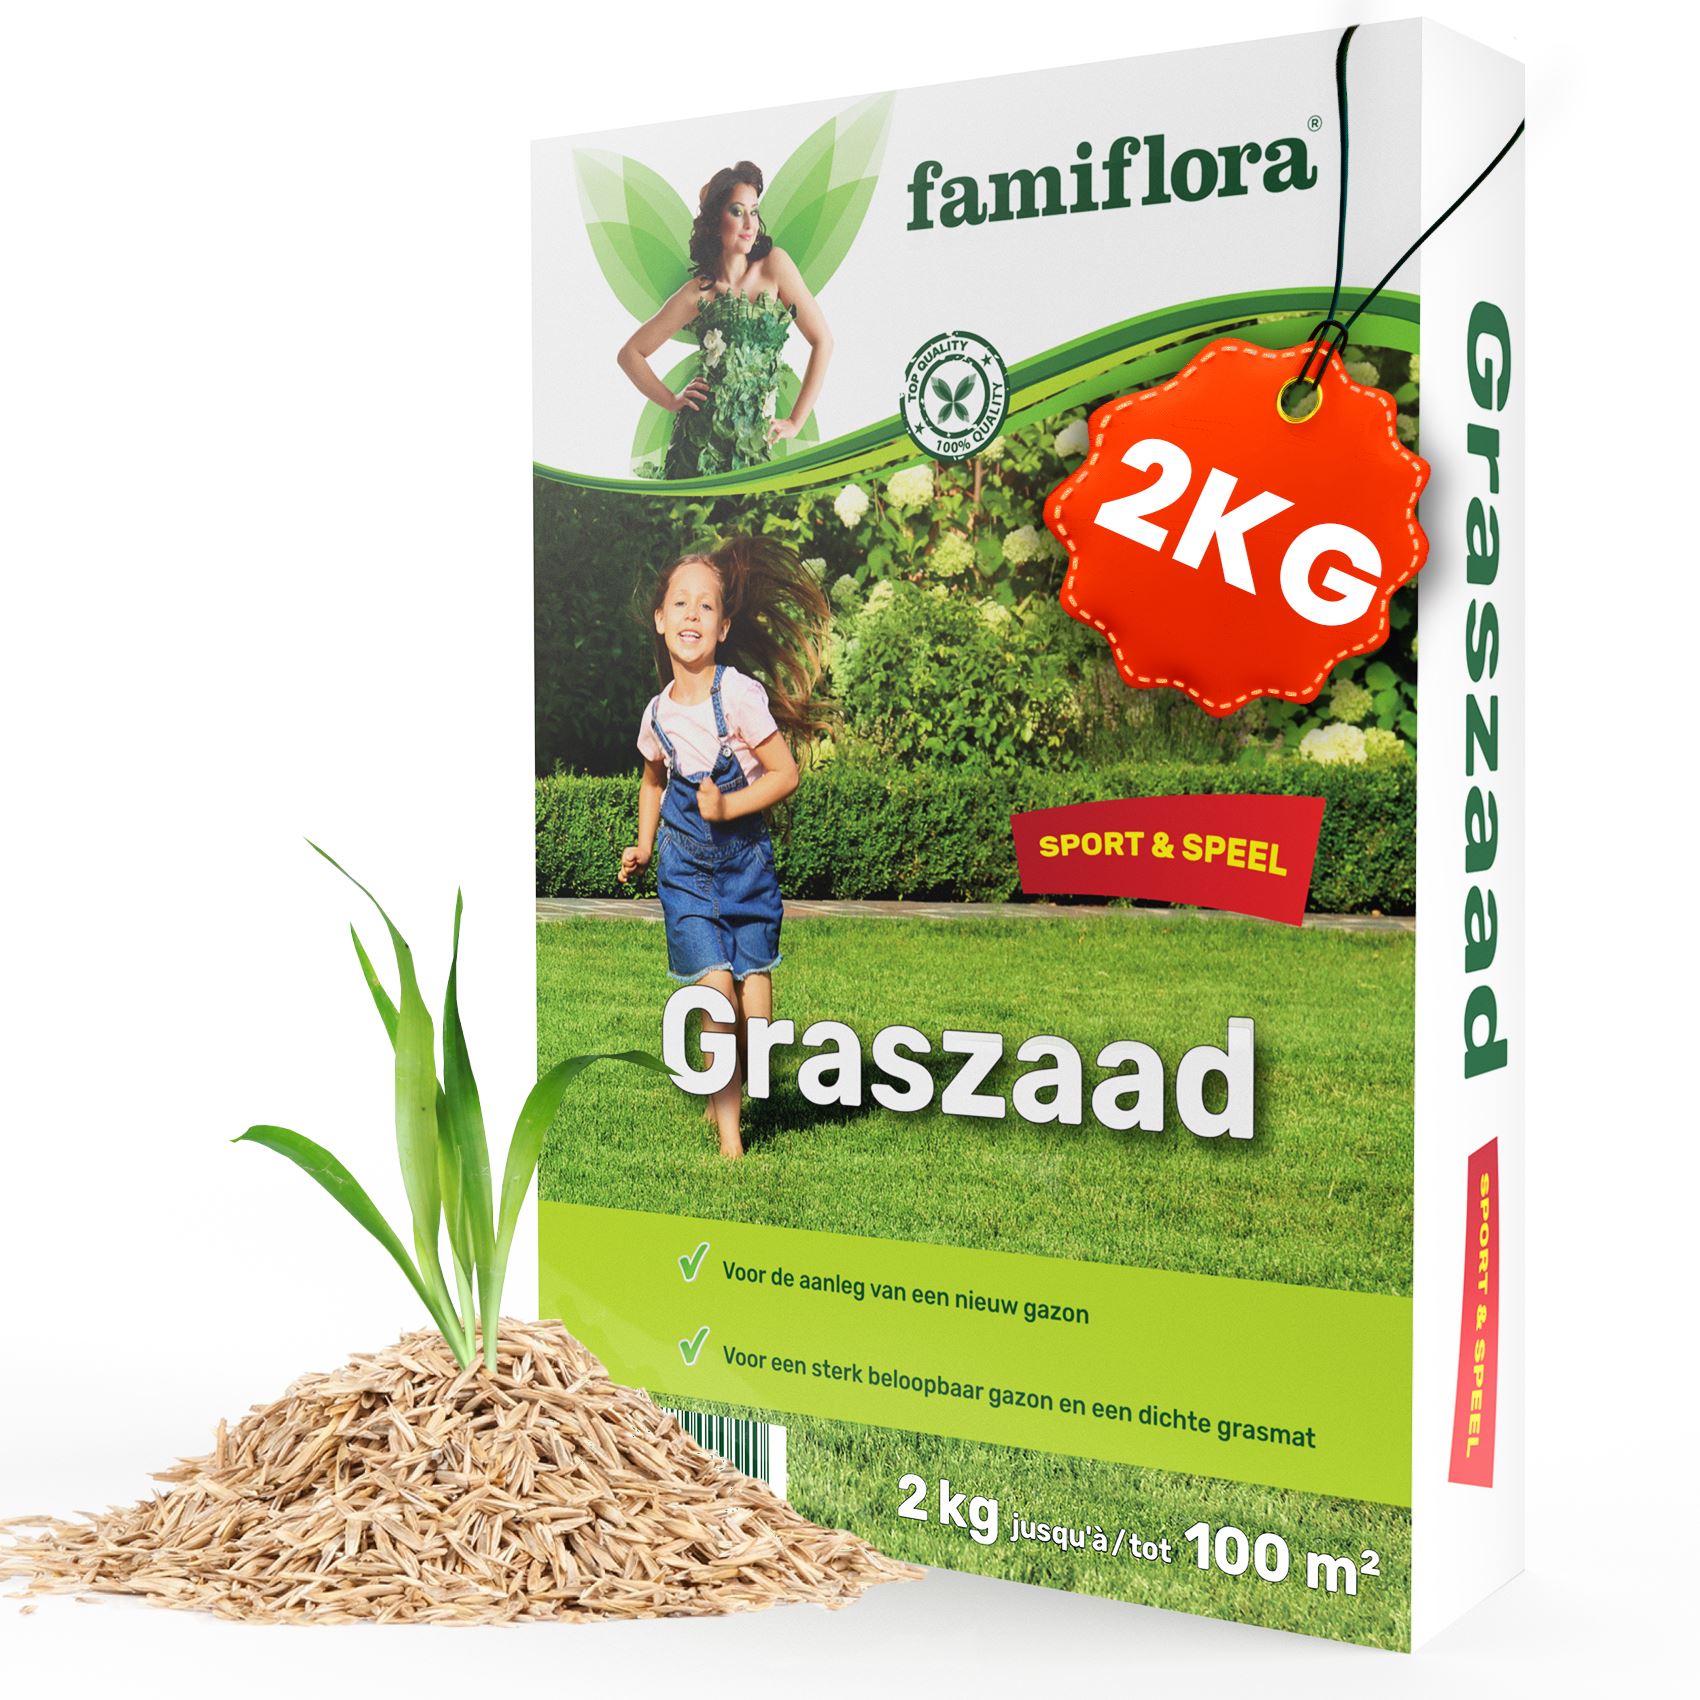 Famiflora graszaad Speel & Sport - voor aanleg nieuw gazon - 2kg tot 100m²